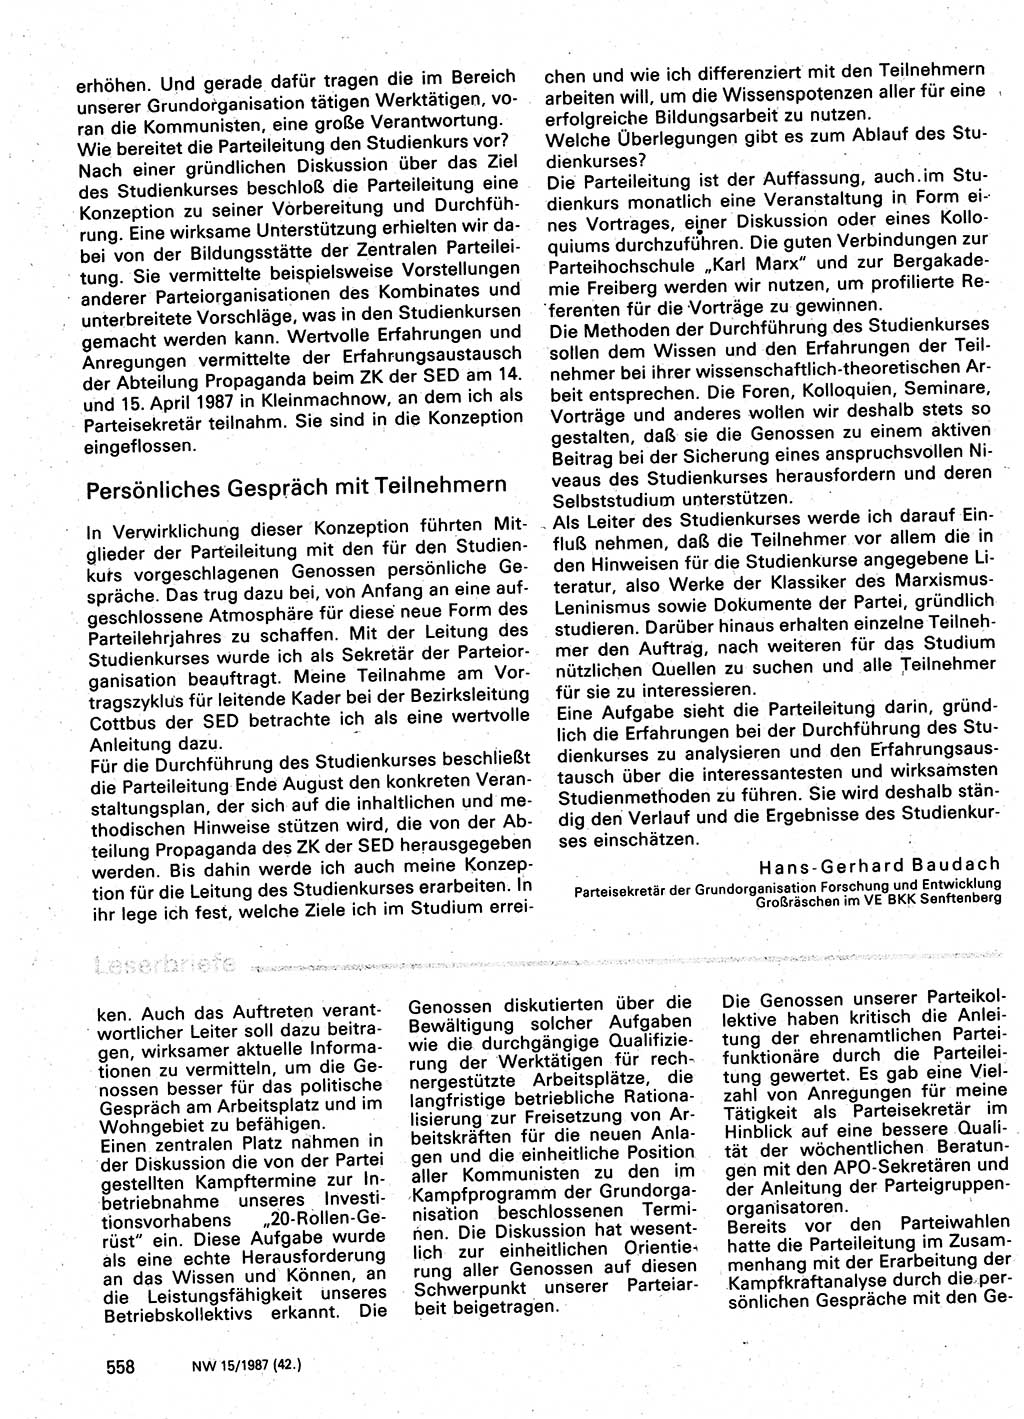 Neuer Weg (NW), Organ des Zentralkomitees (ZK) der SED (Sozialistische Einheitspartei Deutschlands) für Fragen des Parteilebens, 42. Jahrgang [Deutsche Demokratische Republik (DDR)] 1987, Seite 558 (NW ZK SED DDR 1987, S. 558)